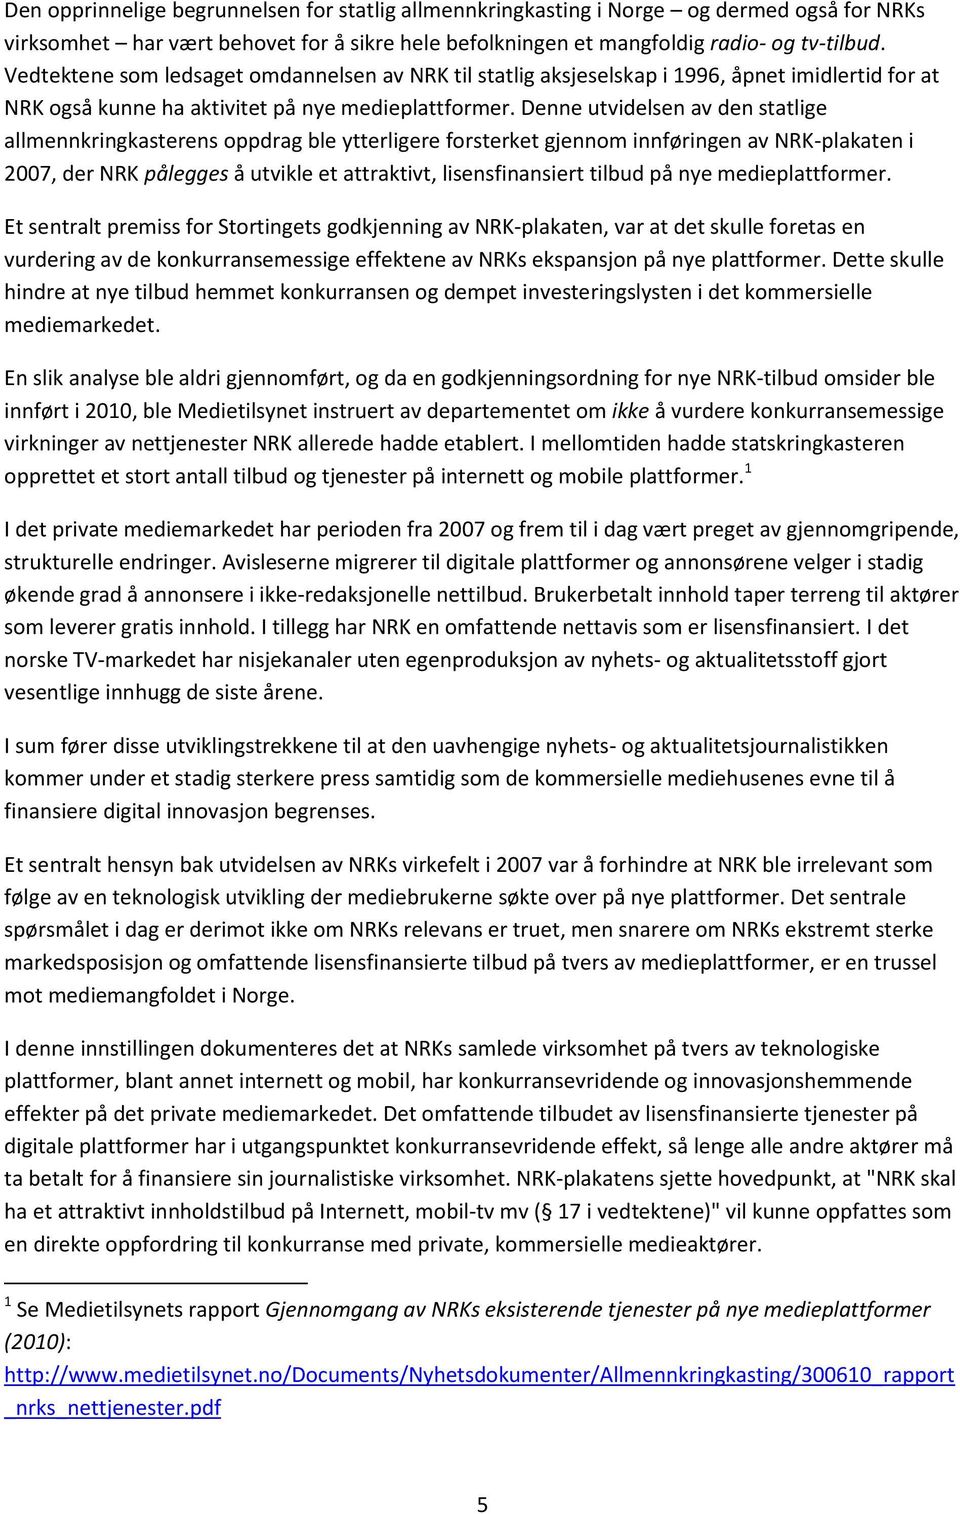 Denne utvidelsen av den statlige allmennkringkasterens oppdrag ble ytterligere forsterket gjennom innføringen av NRK-plakaten i 2007, der NRK pålegges å utvikle et attraktivt, lisensfinansiert tilbud